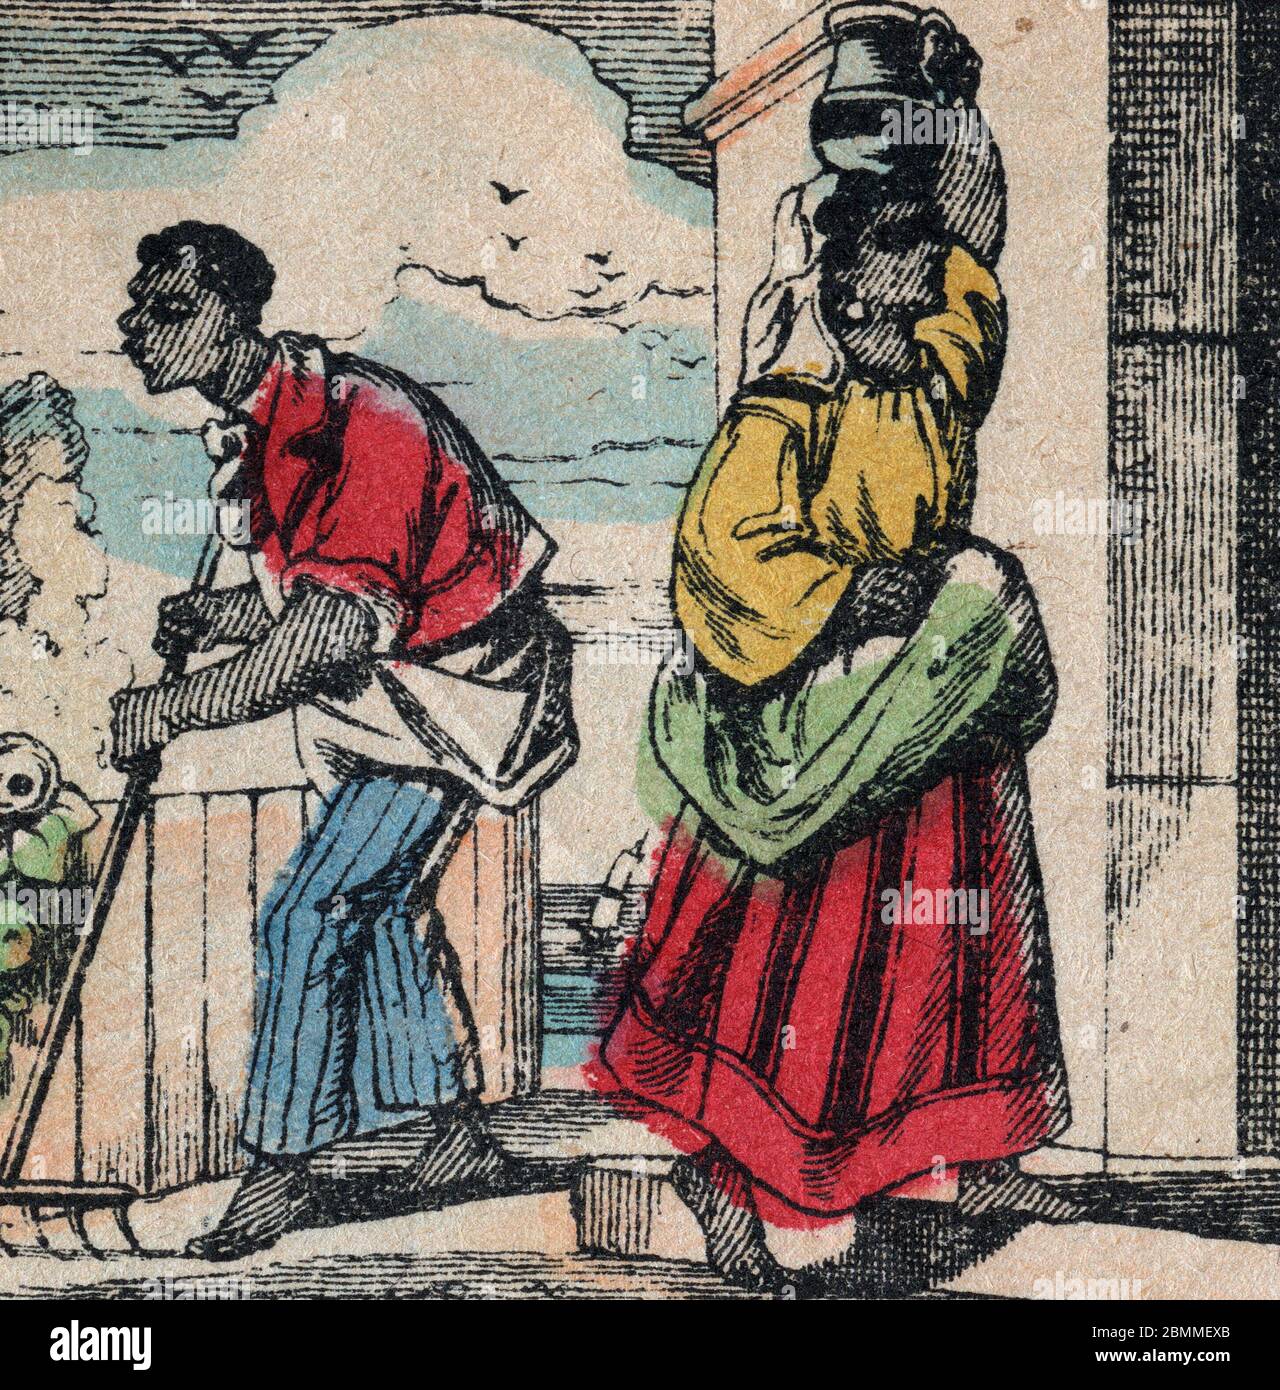 Illustration de 'Paul et Virginie' de Bernardin de Saint Pierre (1737-1814) : deux esclaves de l'Ile de france (puis ile Maurice) - Paul et Virginie, Stockfoto